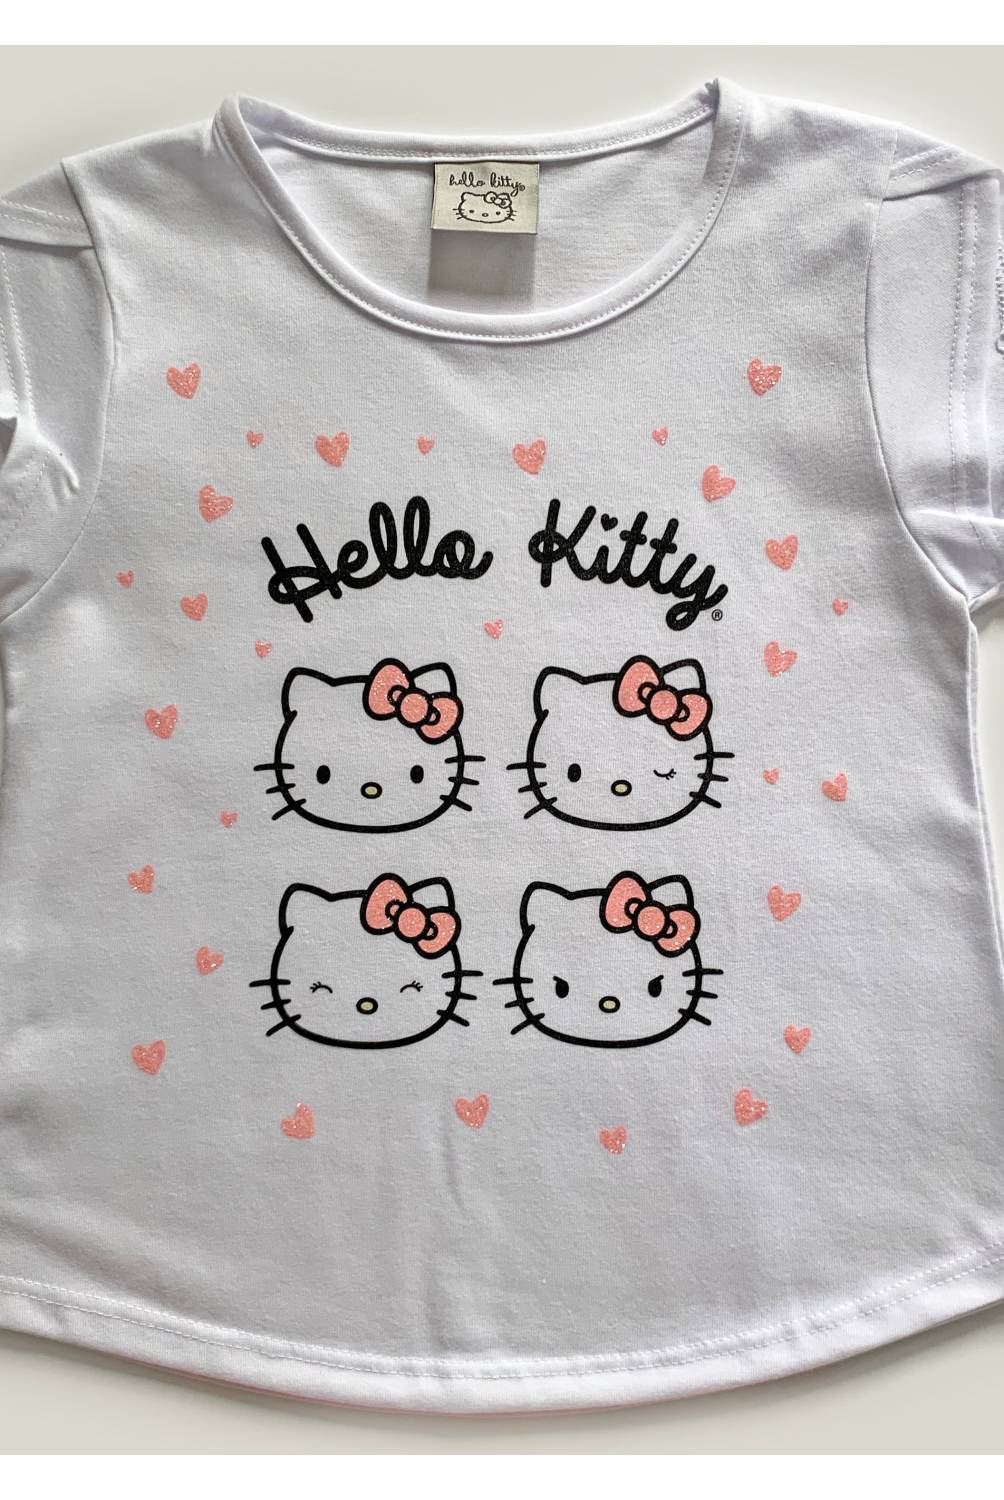 HELLO KITTY - Pijama Niña de Algodón